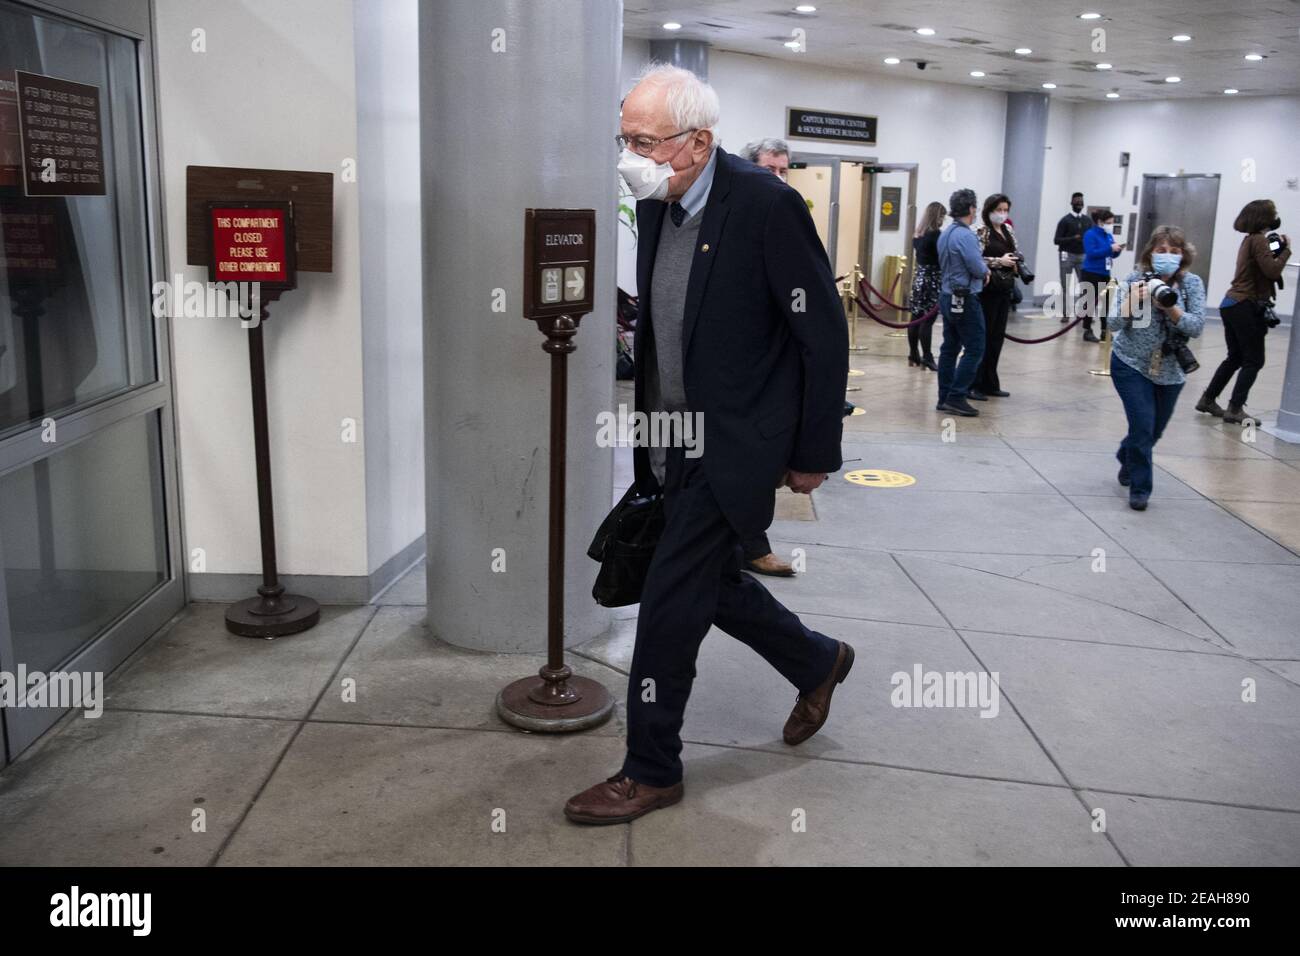 ÉTATS-UNIS - 9 FÉVRIER : le sénateur Bernie Sanders, I-V., est vu dans le métro du sénat après le premier jour du procès de destitution de l'ancien président Donald Trump au Capitole, le mardi 9 février 2021. (Photo de Tom Williams/CQ Roll Call/POOL) Banque D'Images